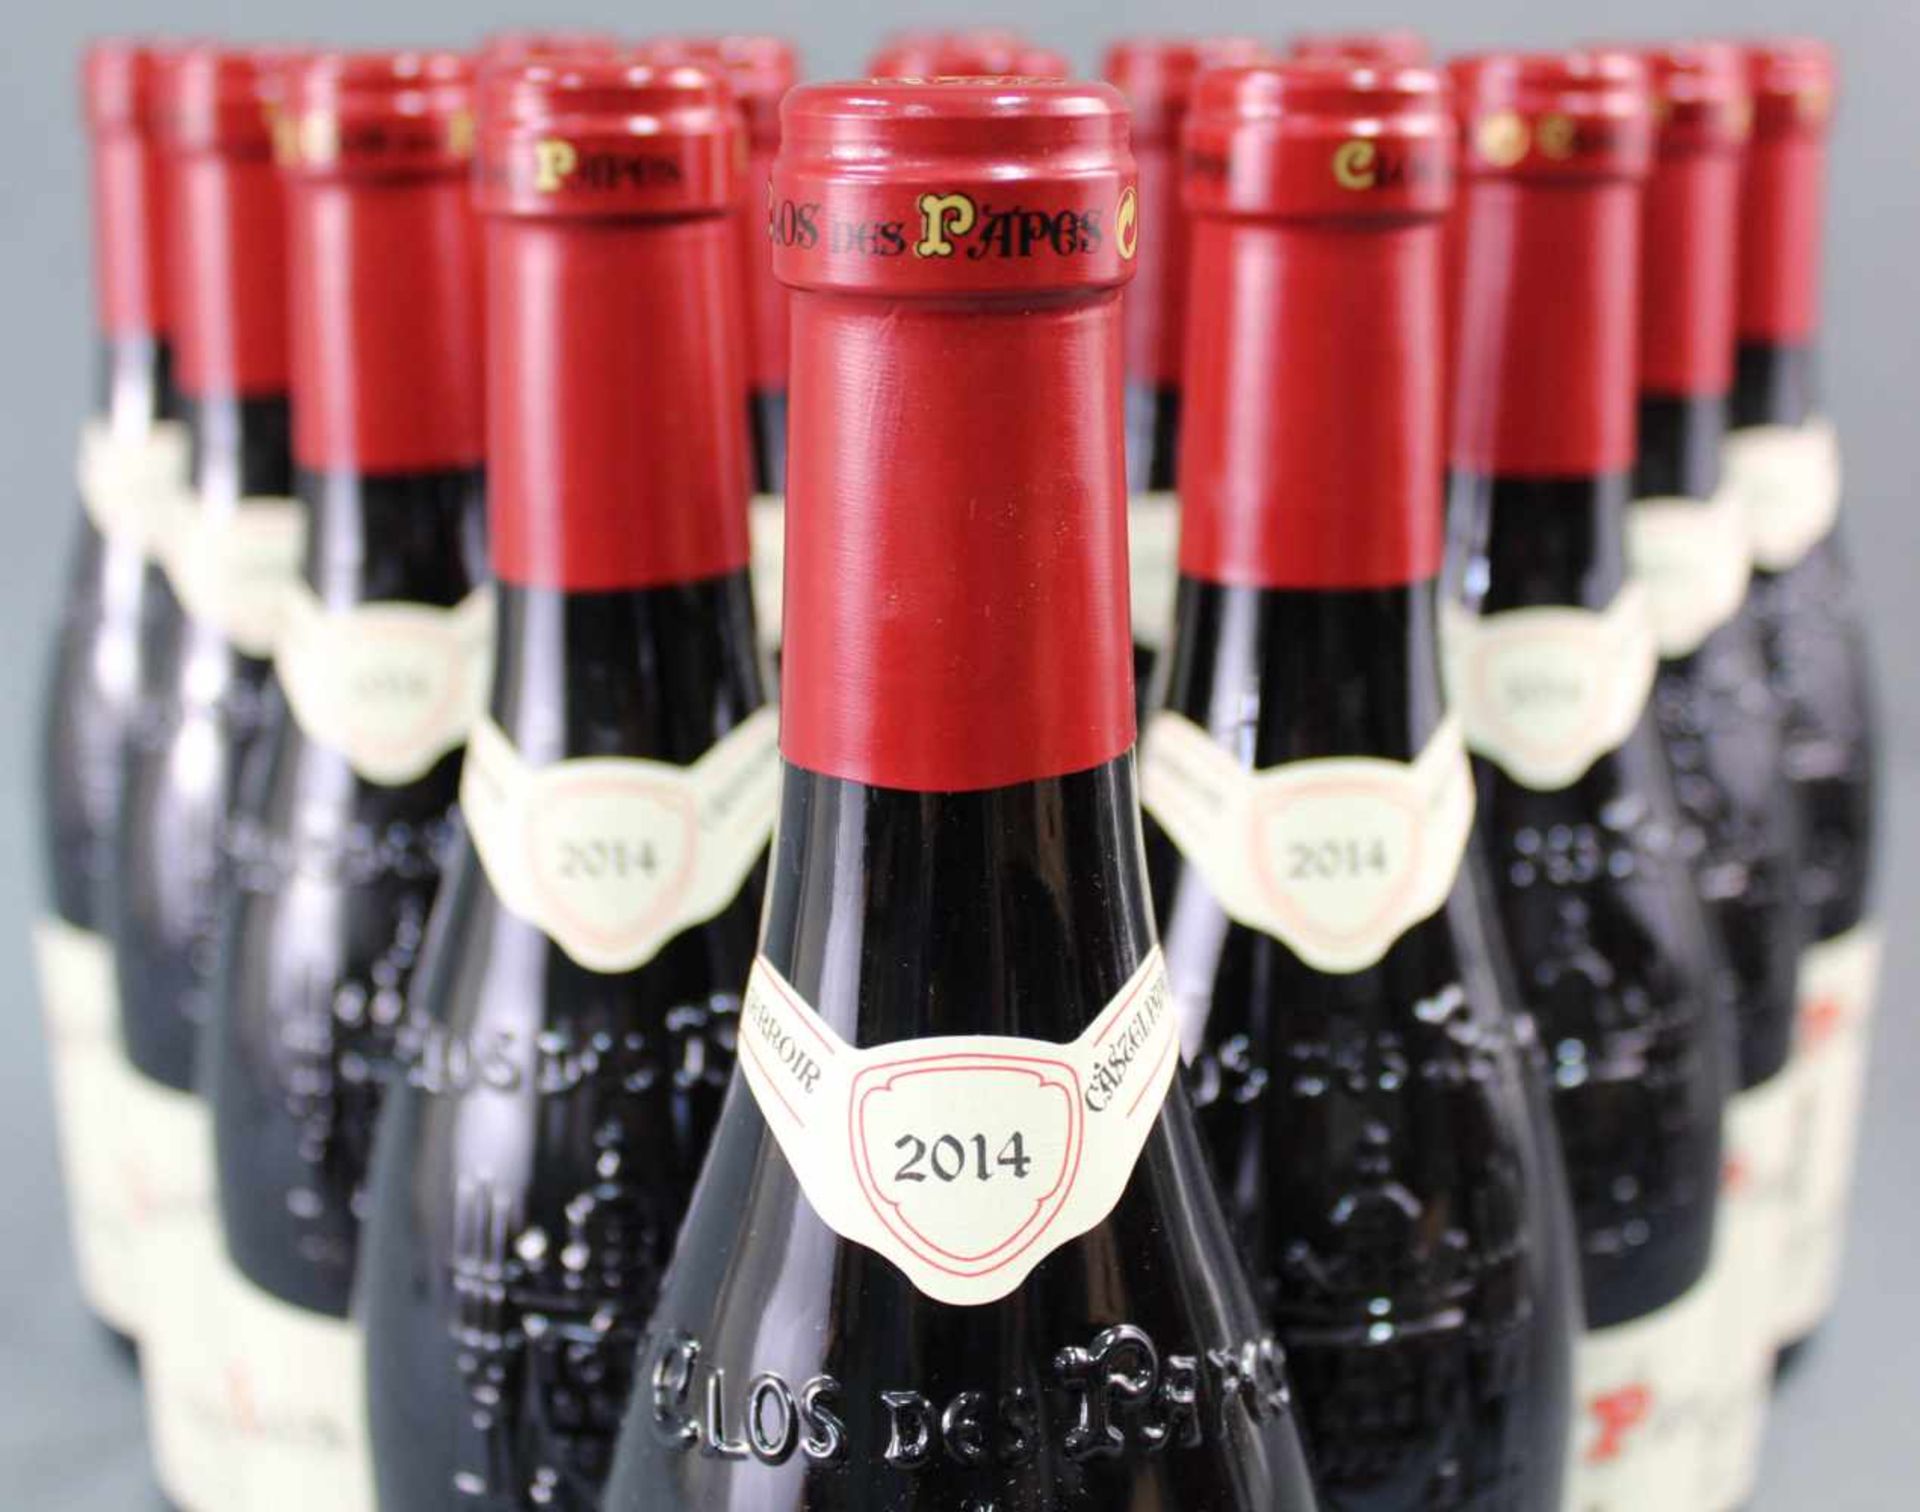 2014 Chateauneuf du Papes. "Clos des Papes". 14% Vol. 750 ml. 16 ganze Flaschen Rotwein - Bild 4 aus 6